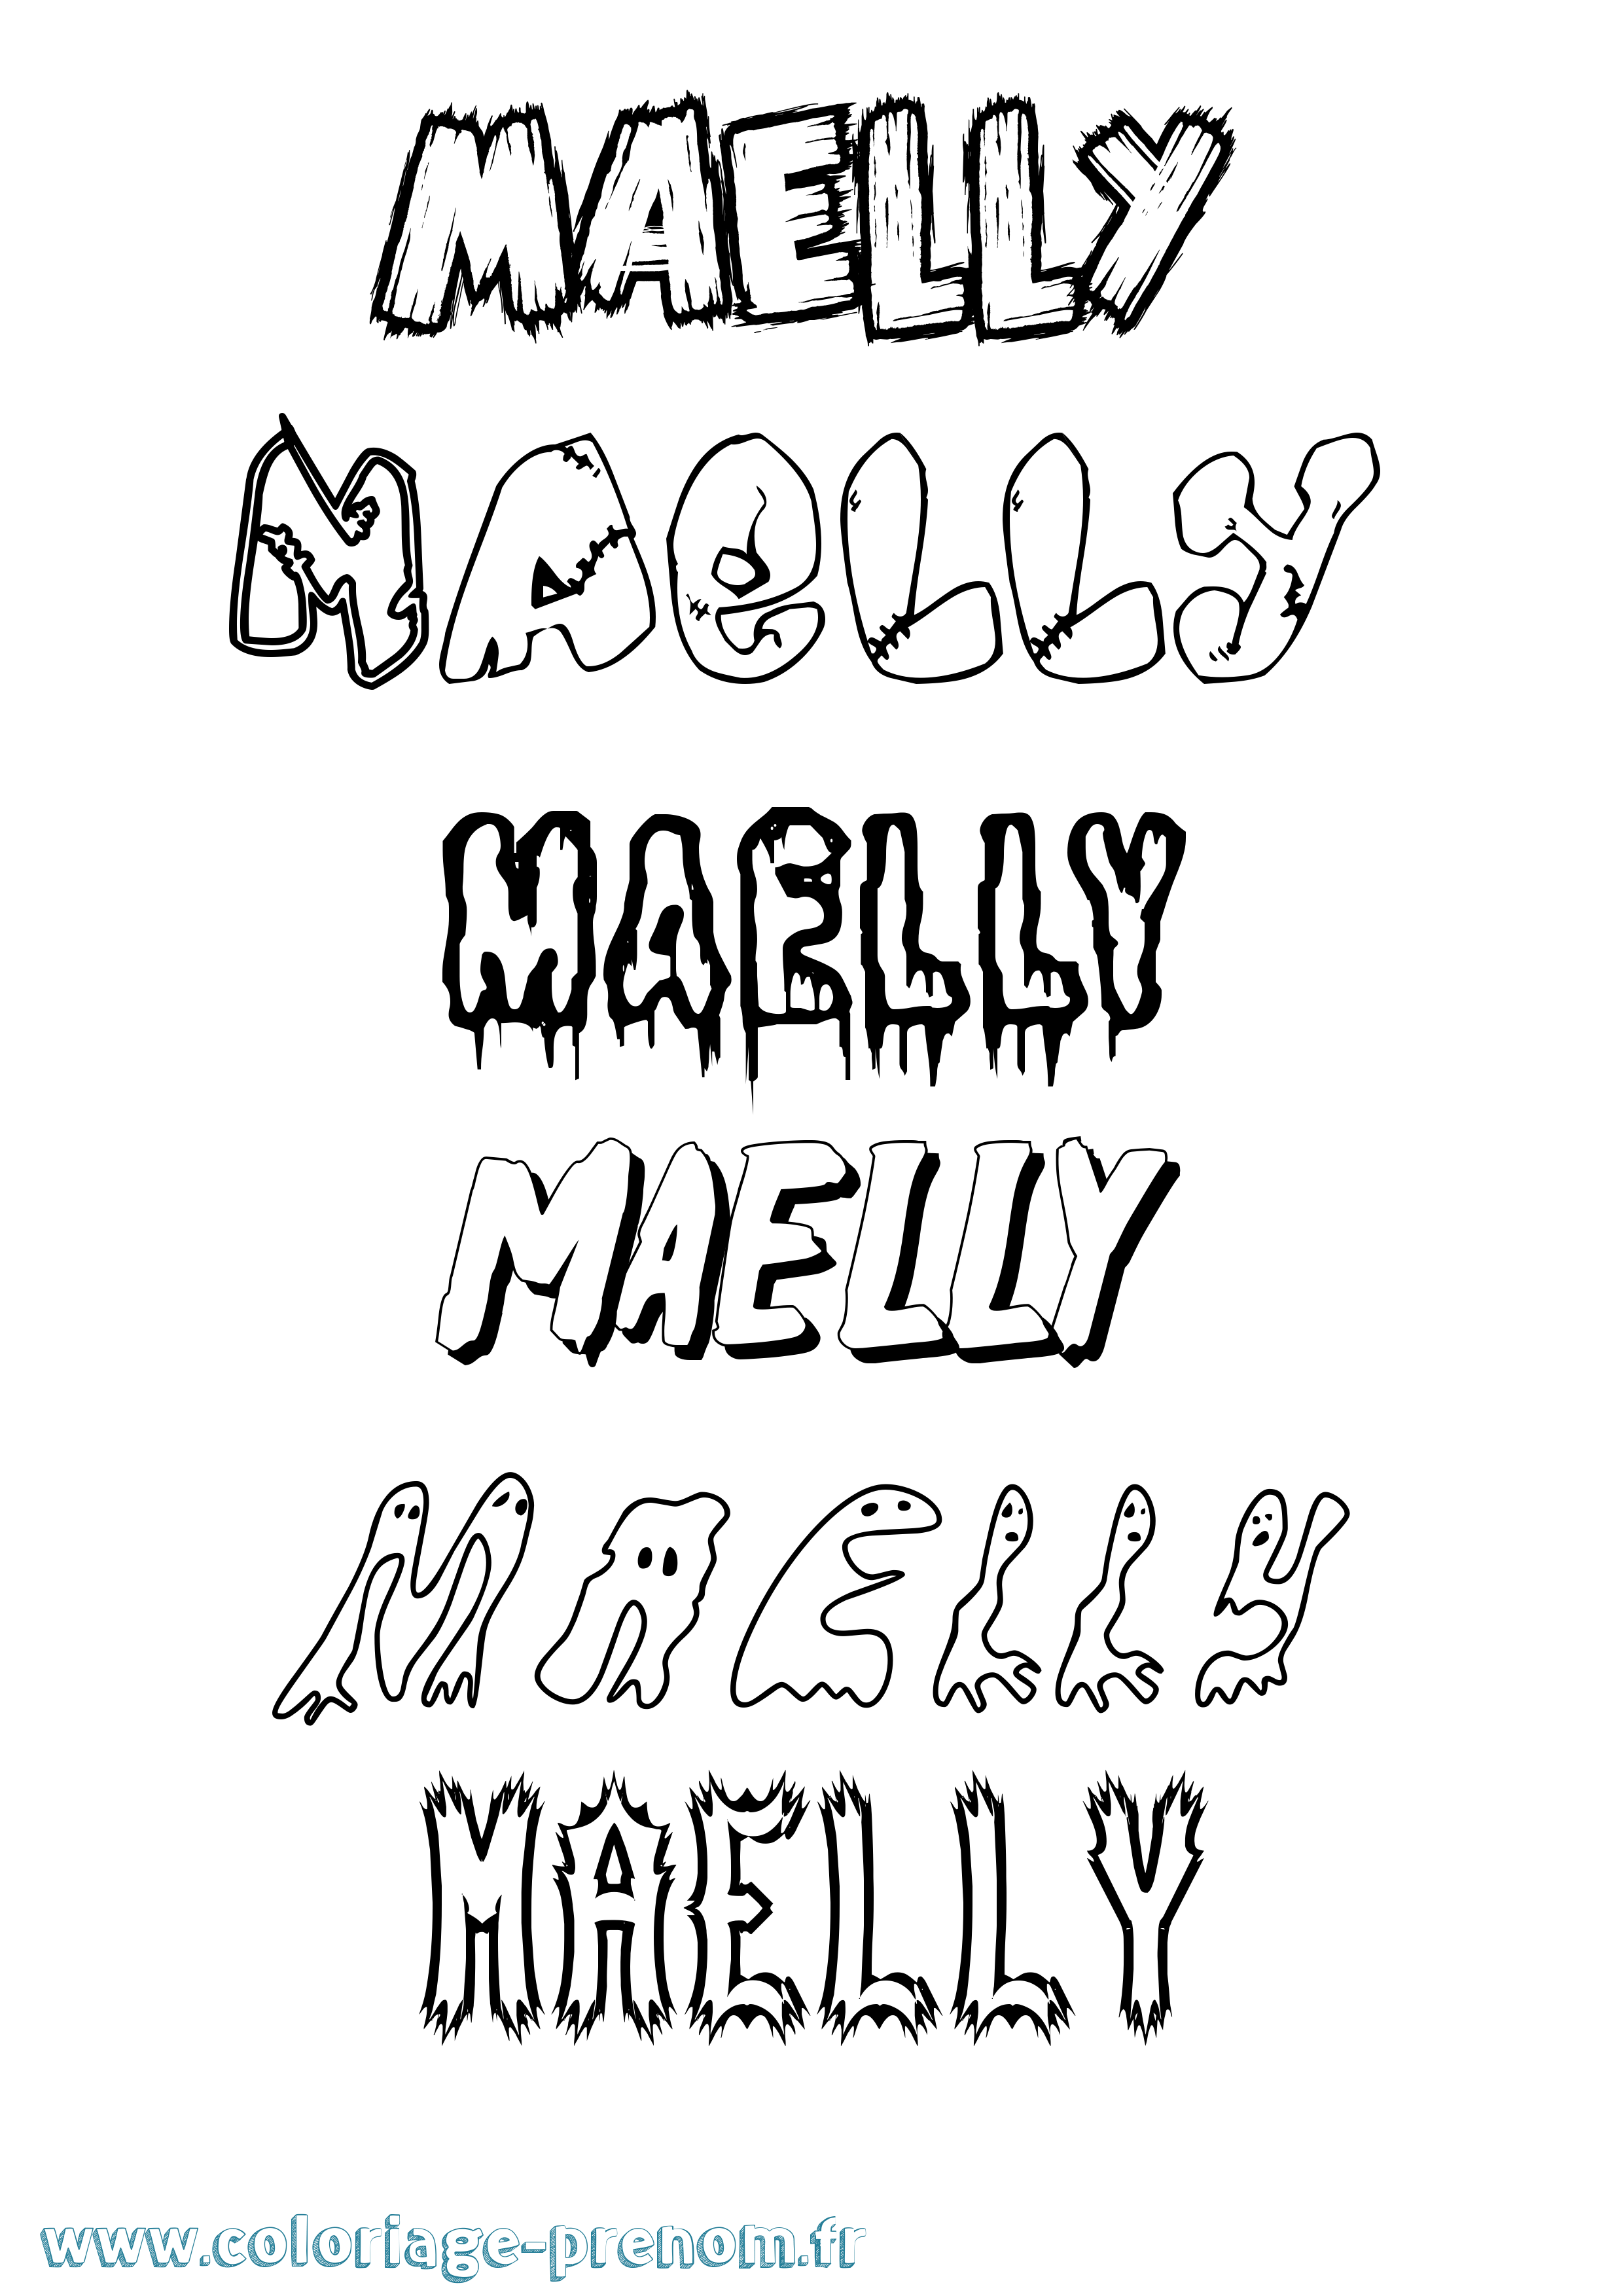 Coloriage prénom Maelly Frisson